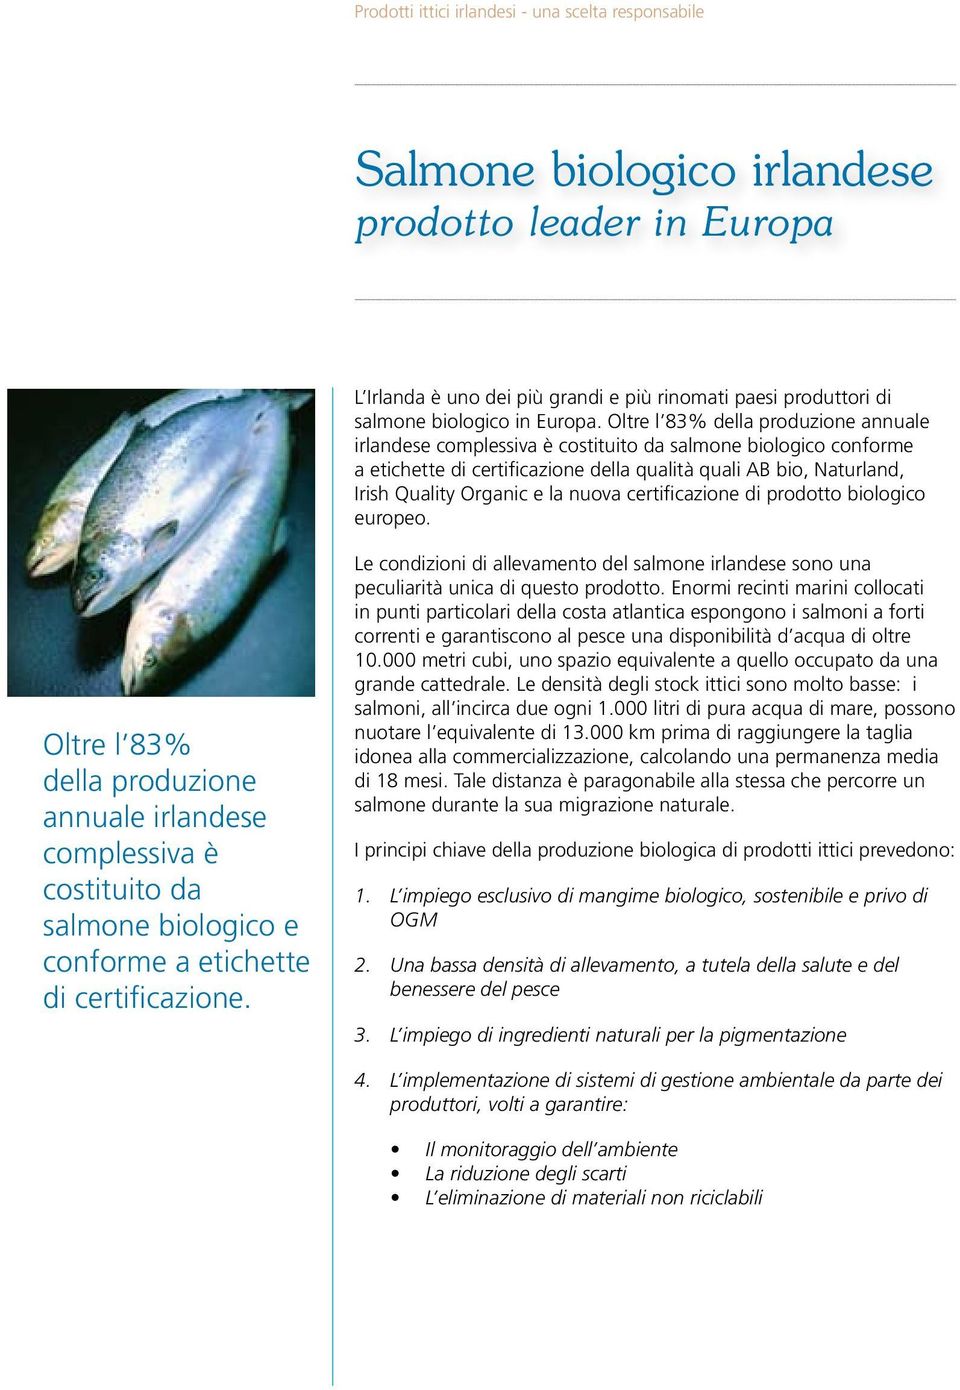 nuova certificazione di prodotto biologico europeo. Oltre l 83% della produzione annuale irlandese complessiva è costituito da salmone biologico e conforme a etichette di certificazione.